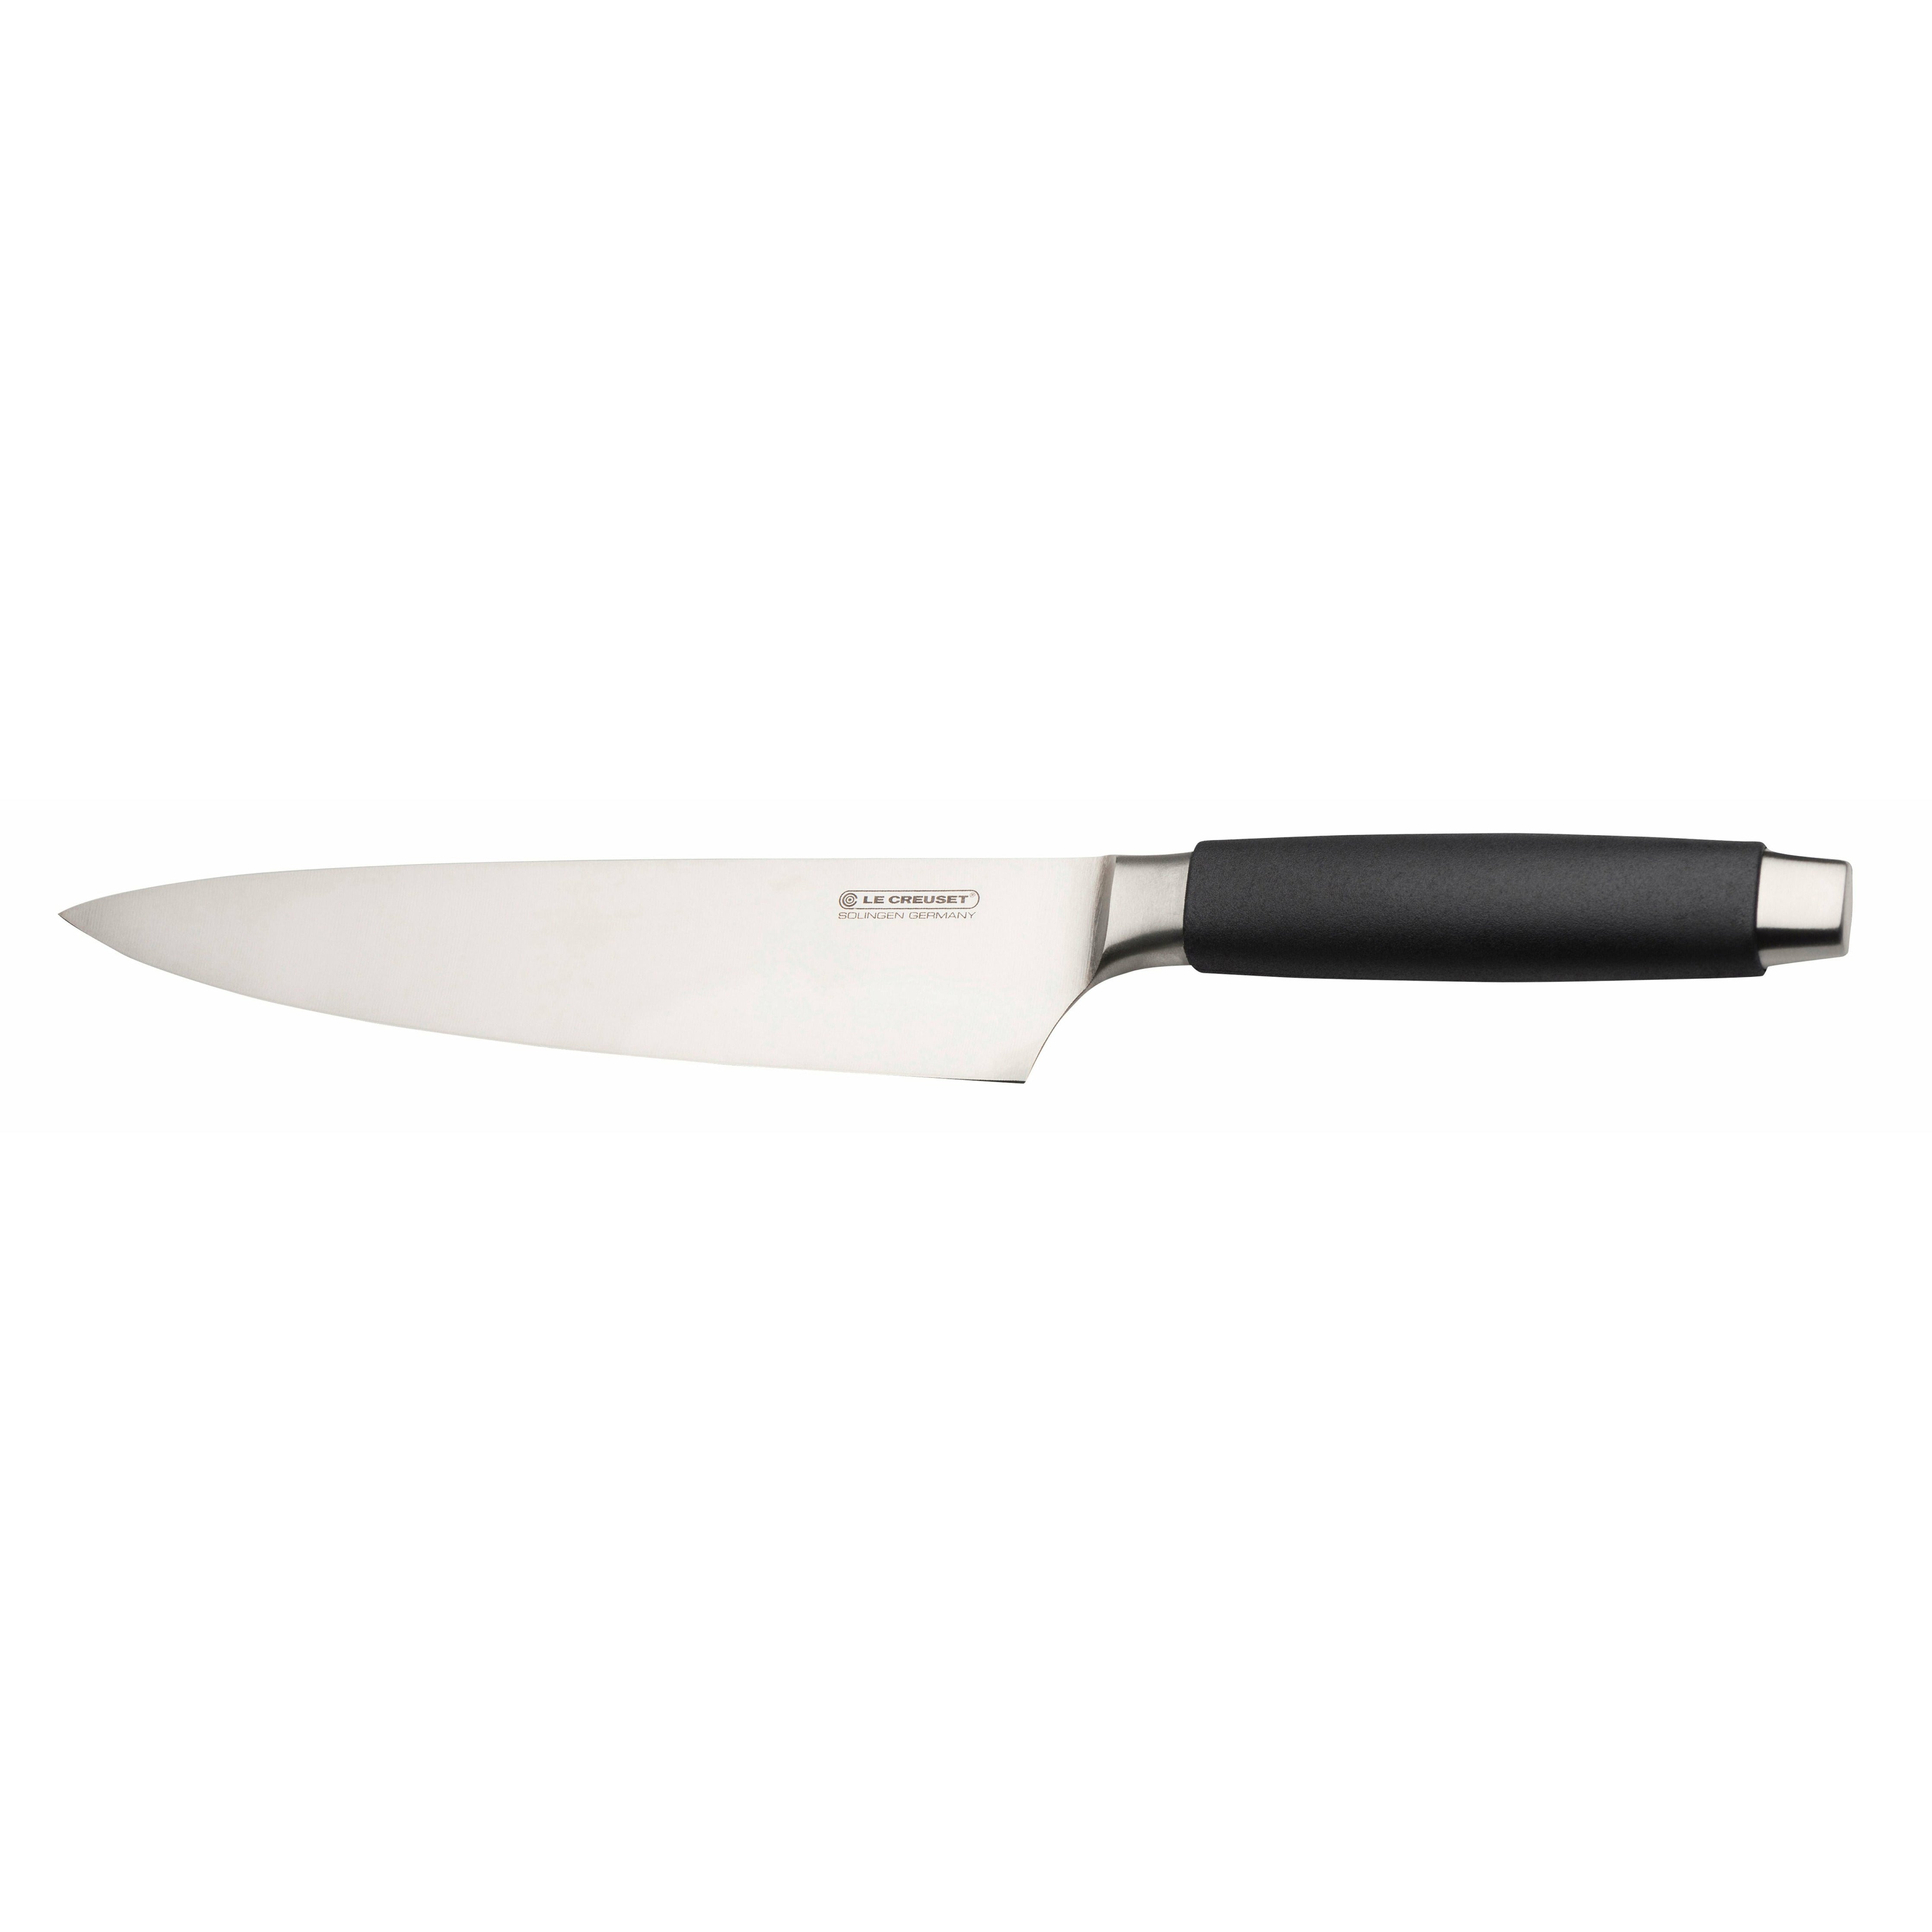 Le Creuset Kokkens knivstandard med sort håndtag, 20 cm